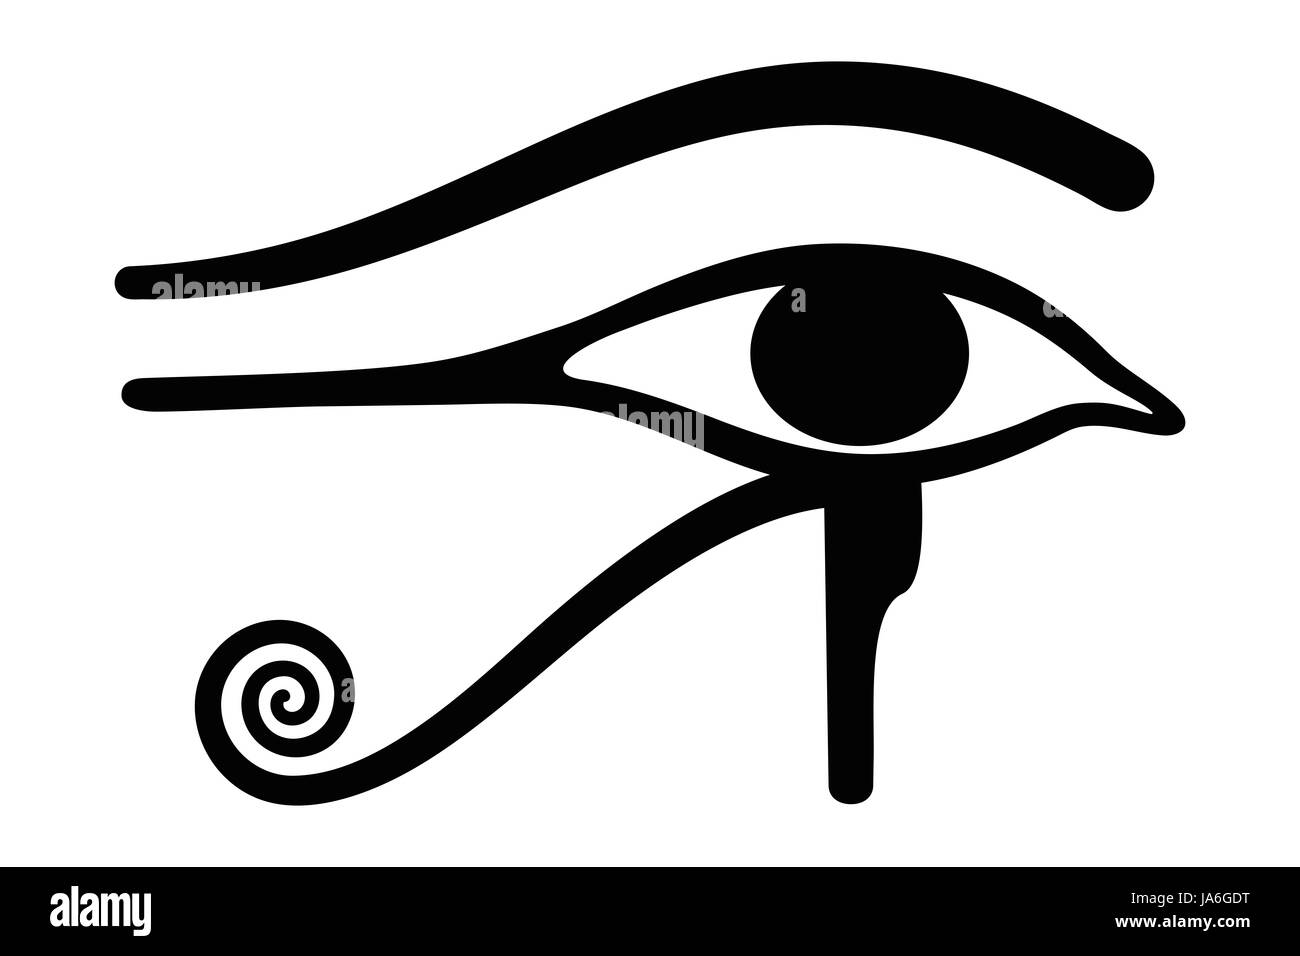 Wedjat, in seguito chiamato occhio di Horus. Antico simbolo egizio di protezione, il potere reale e la buona salute, personificata nella dea Wadjet. Occhio di Ra. Foto Stock